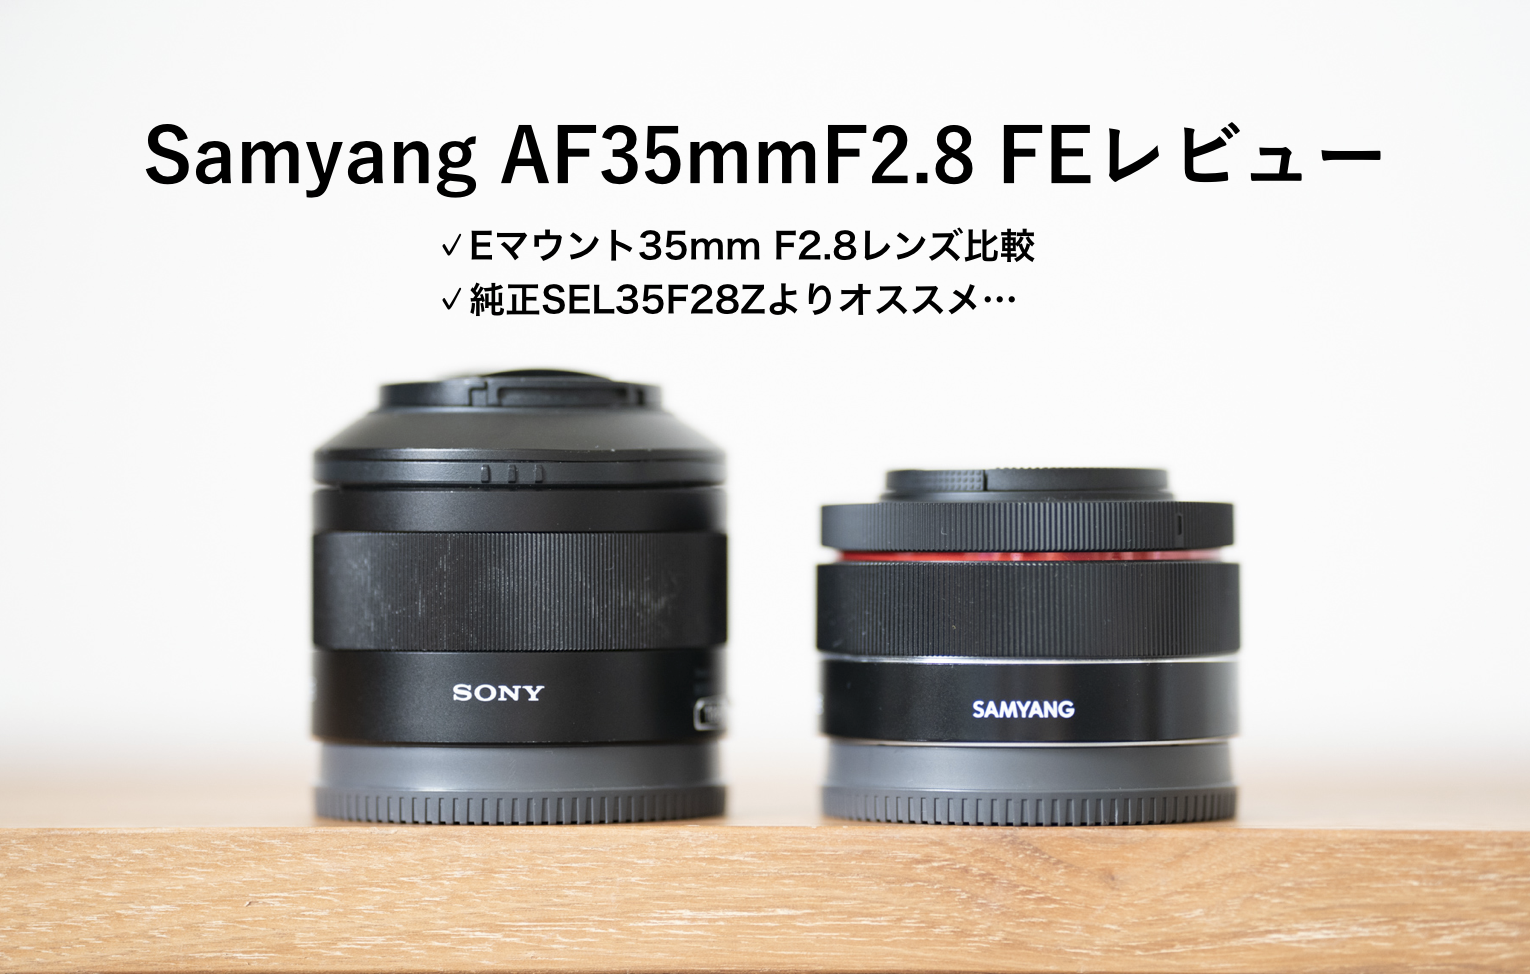 ソニーsony a7m2 + サムヤンSAMYANG AF 35mm F2.8